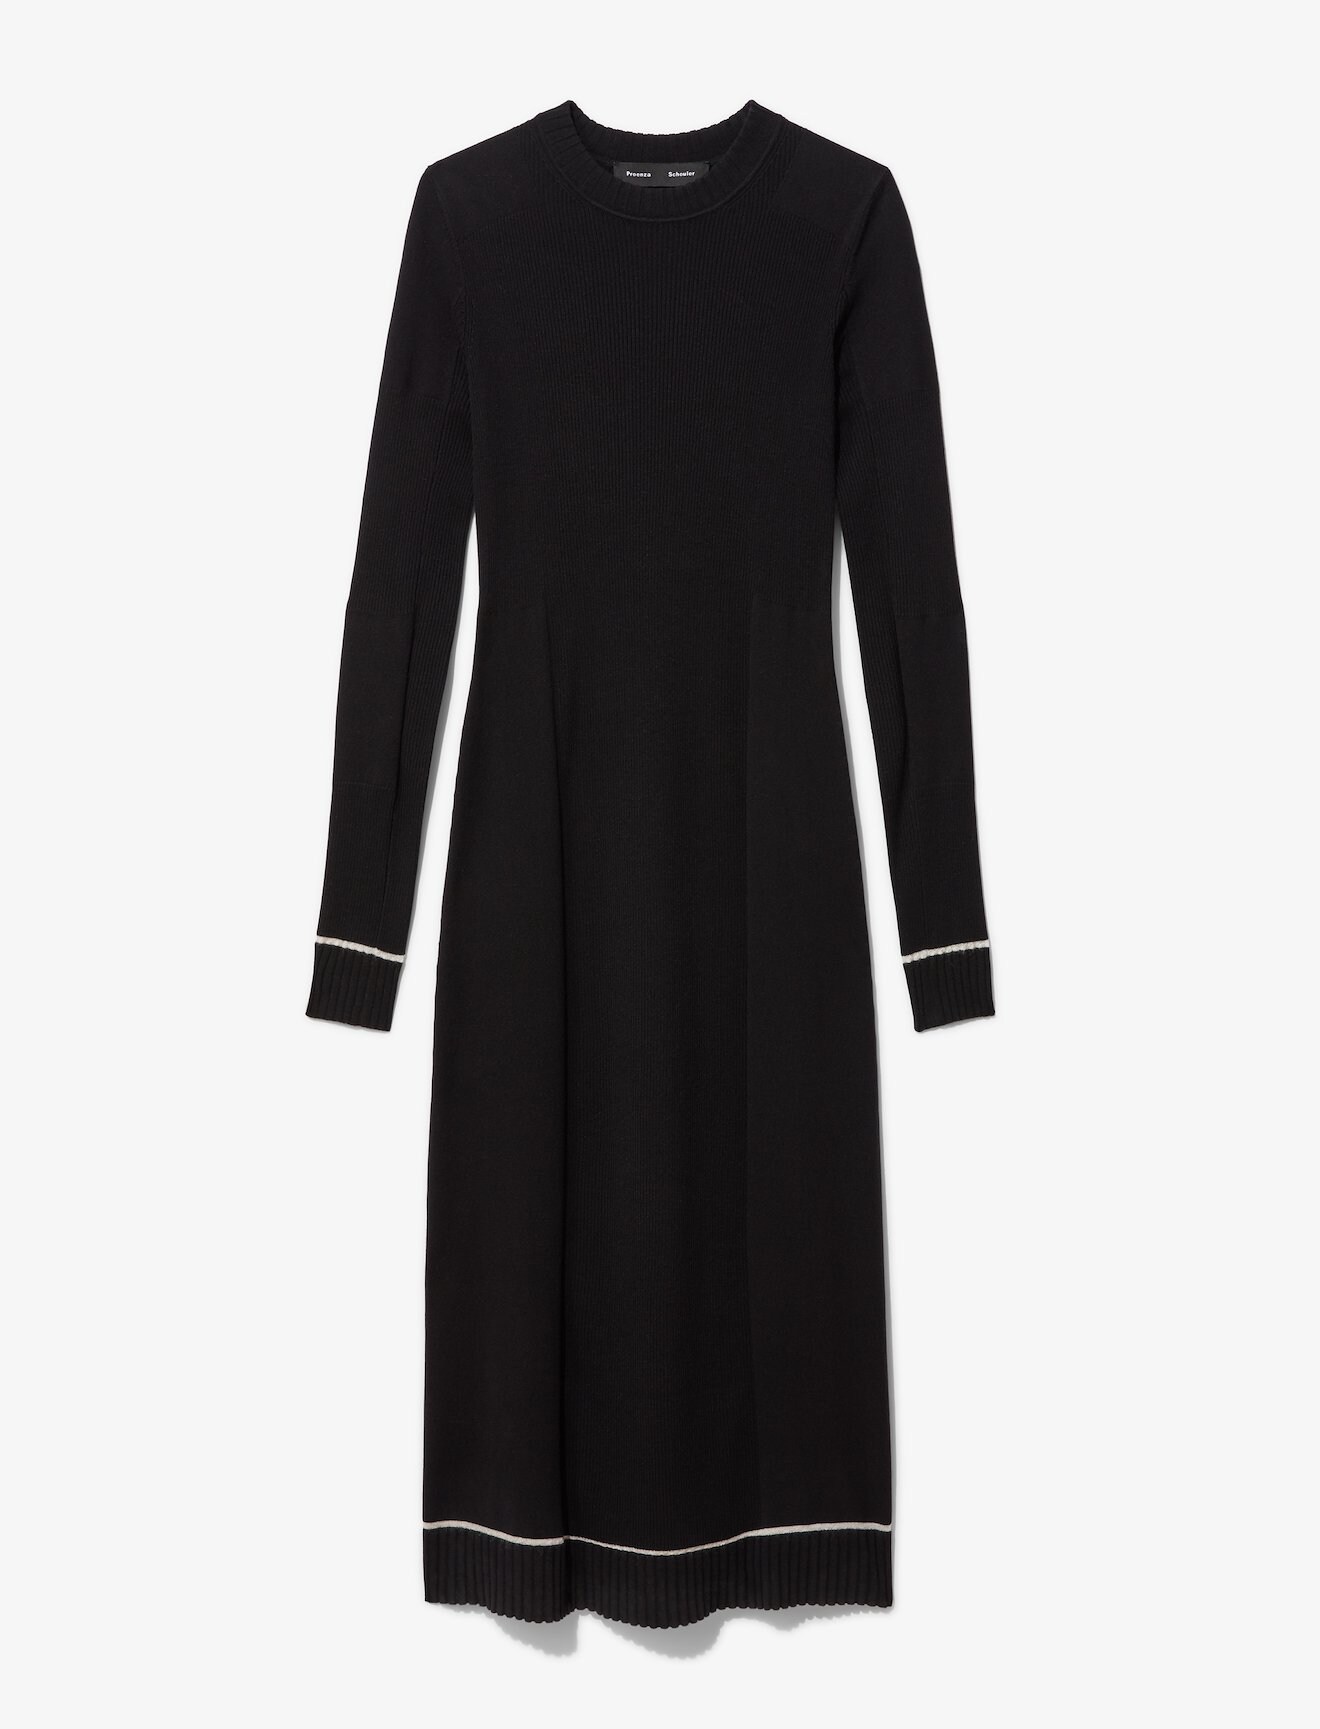 Silk Cashmere Rib Knit Dress in black | Proenza Schouler